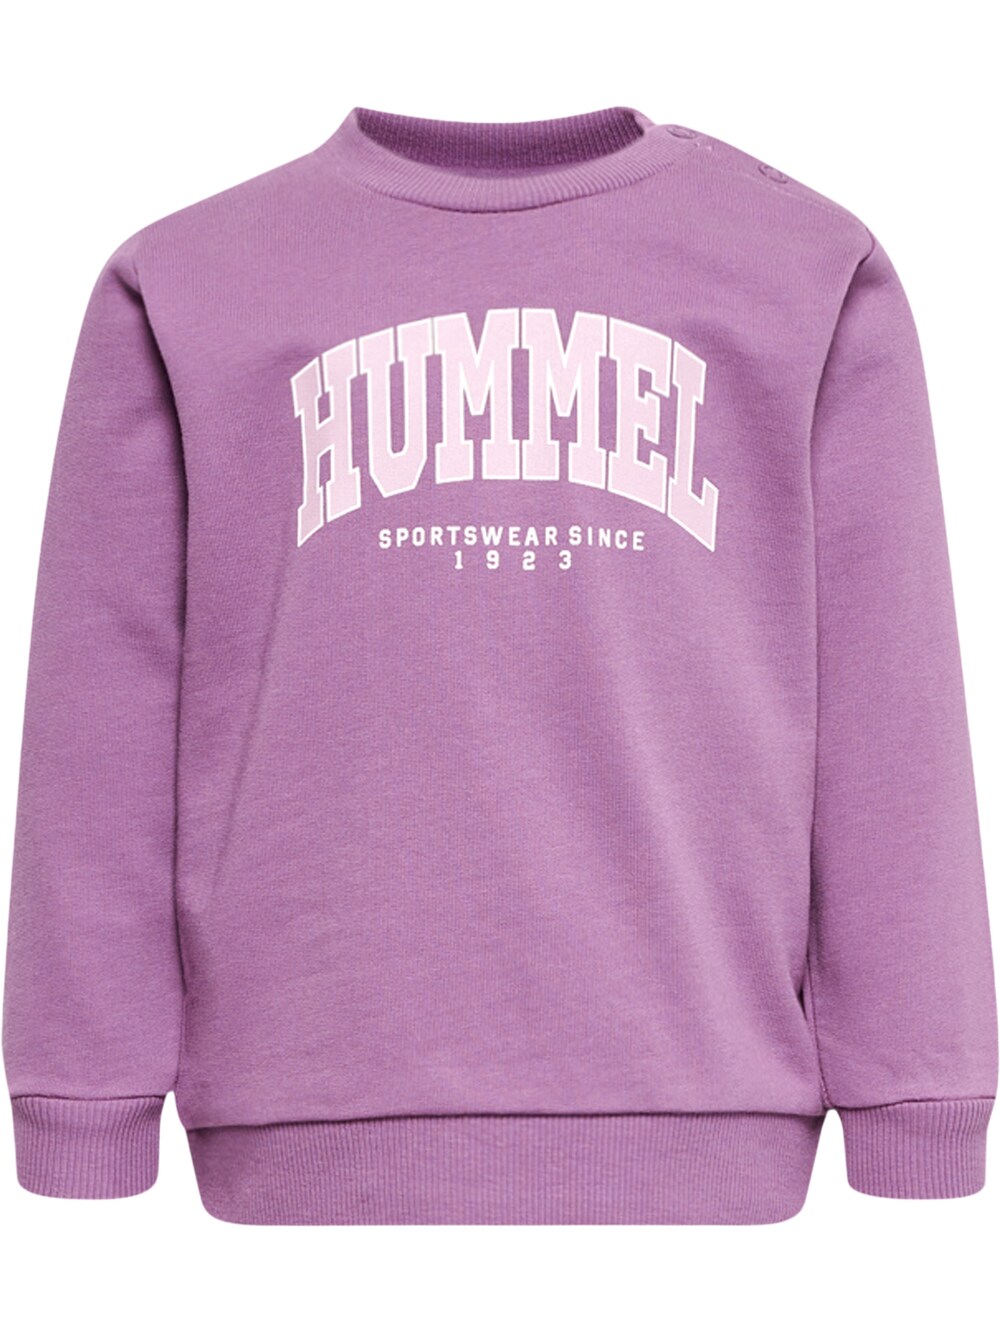 Спортивная толстовка Hummel, фиолетовый